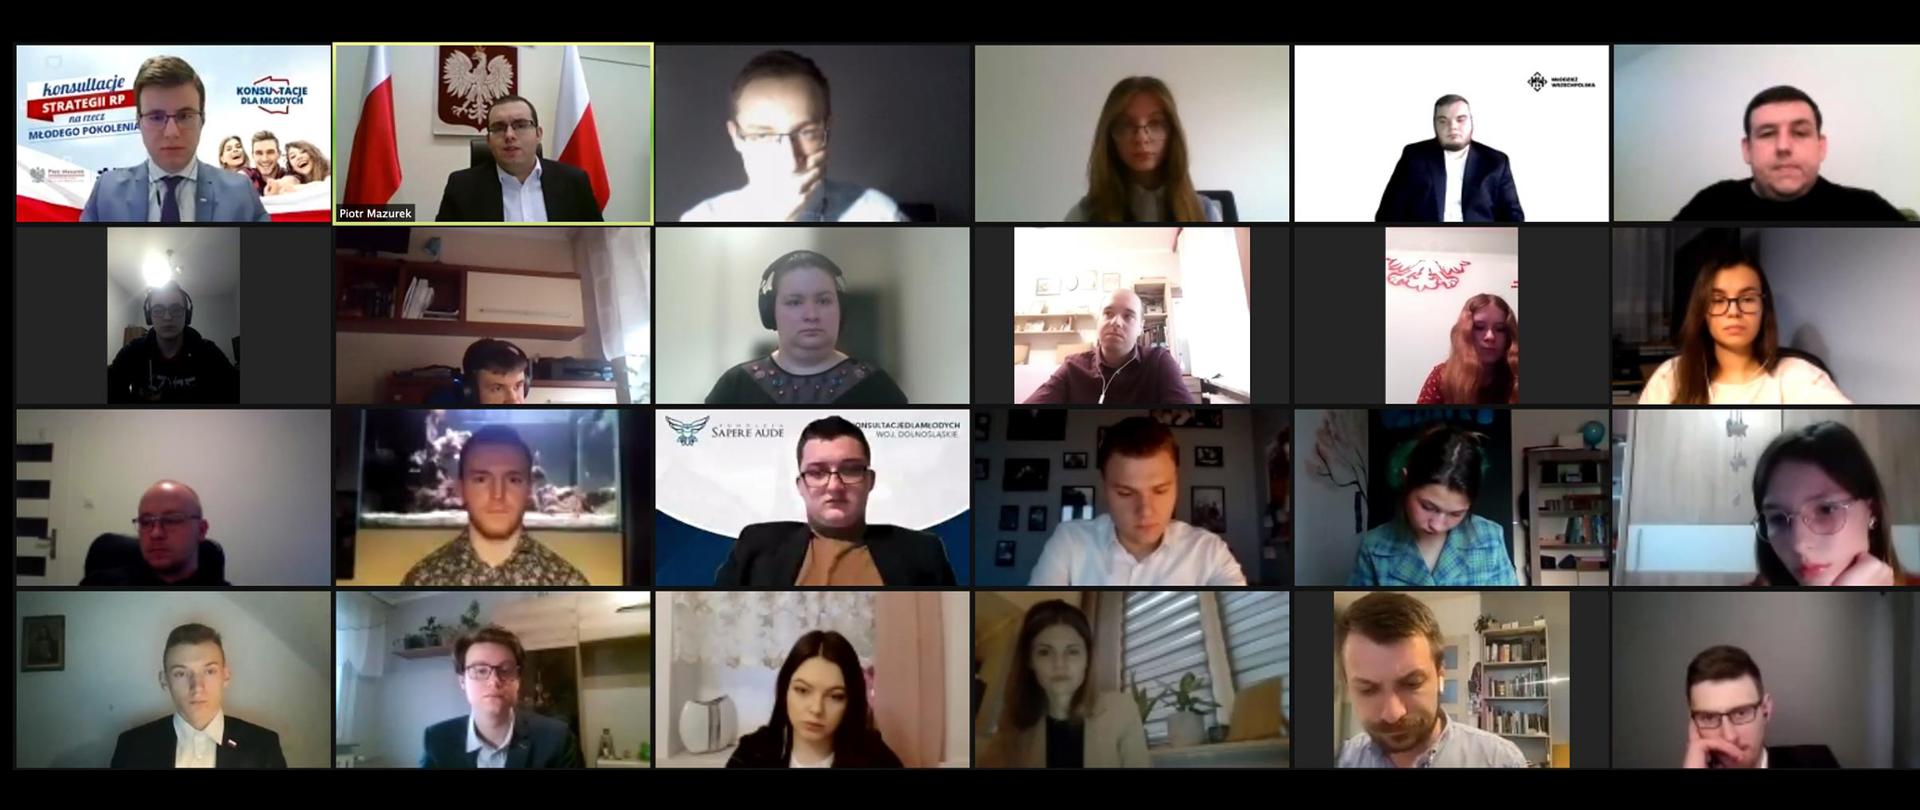 Konsultacje strategii na rzecz młodego pokolenia - zrzut ekranu pokazujący uczestników wideospotkania - dla województwa dolnośląskiego, Uśmiechnięte twarze.